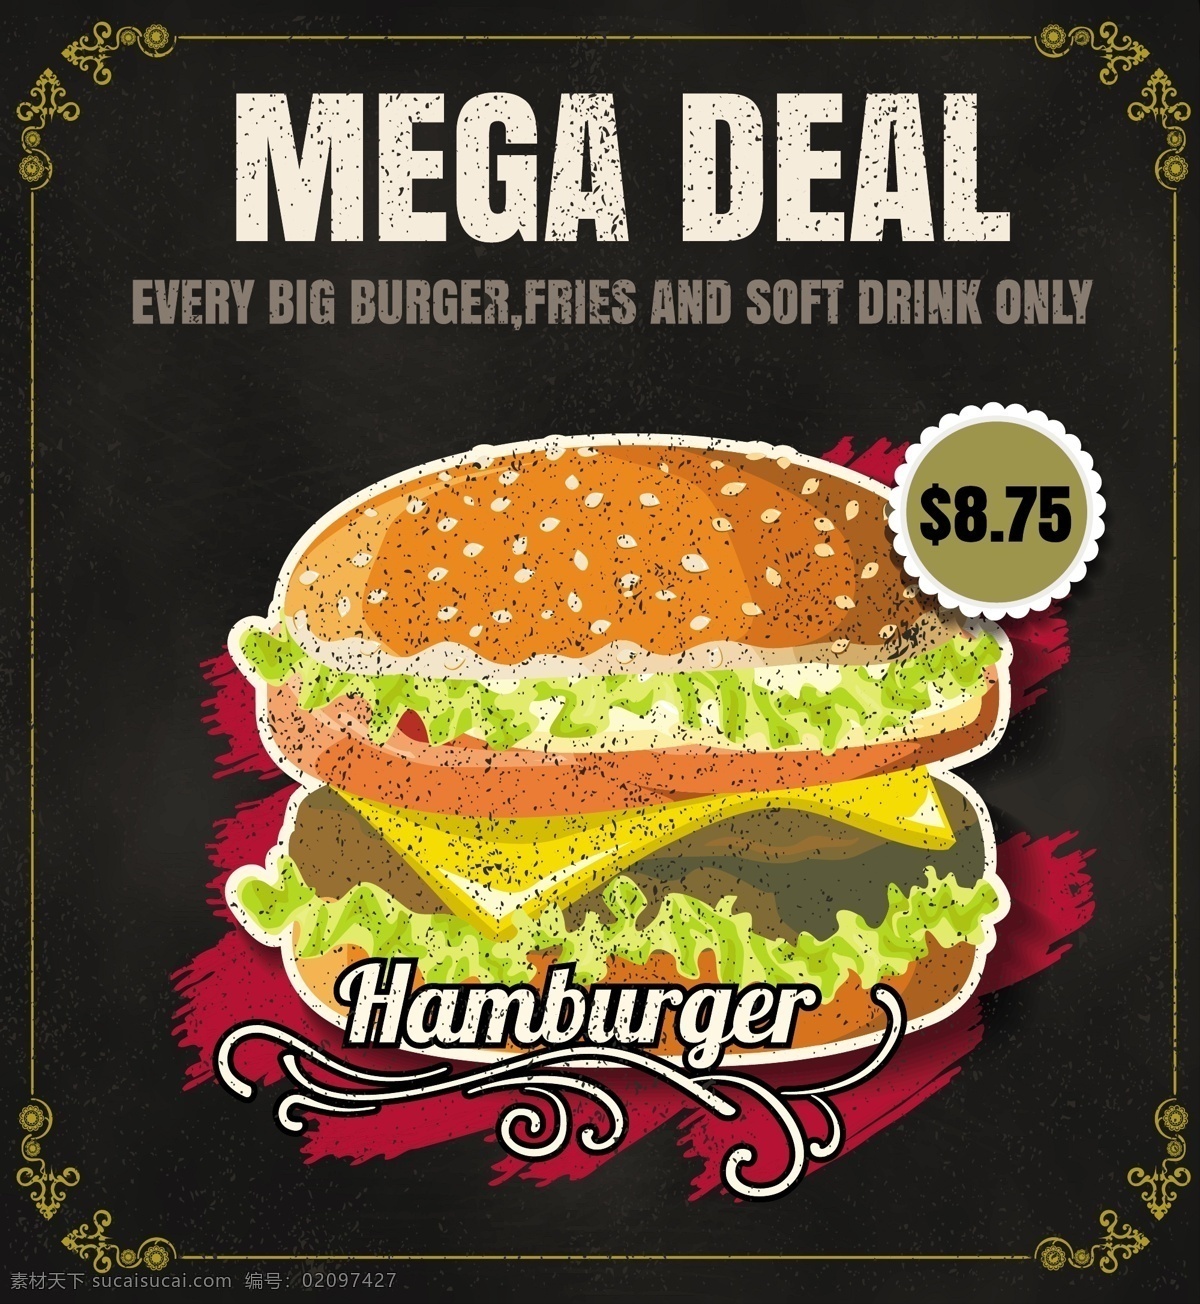 黑底 矢量 手绘 西餐 汉堡 促销 海报 矢量素材 菜谱素材 餐饮美食